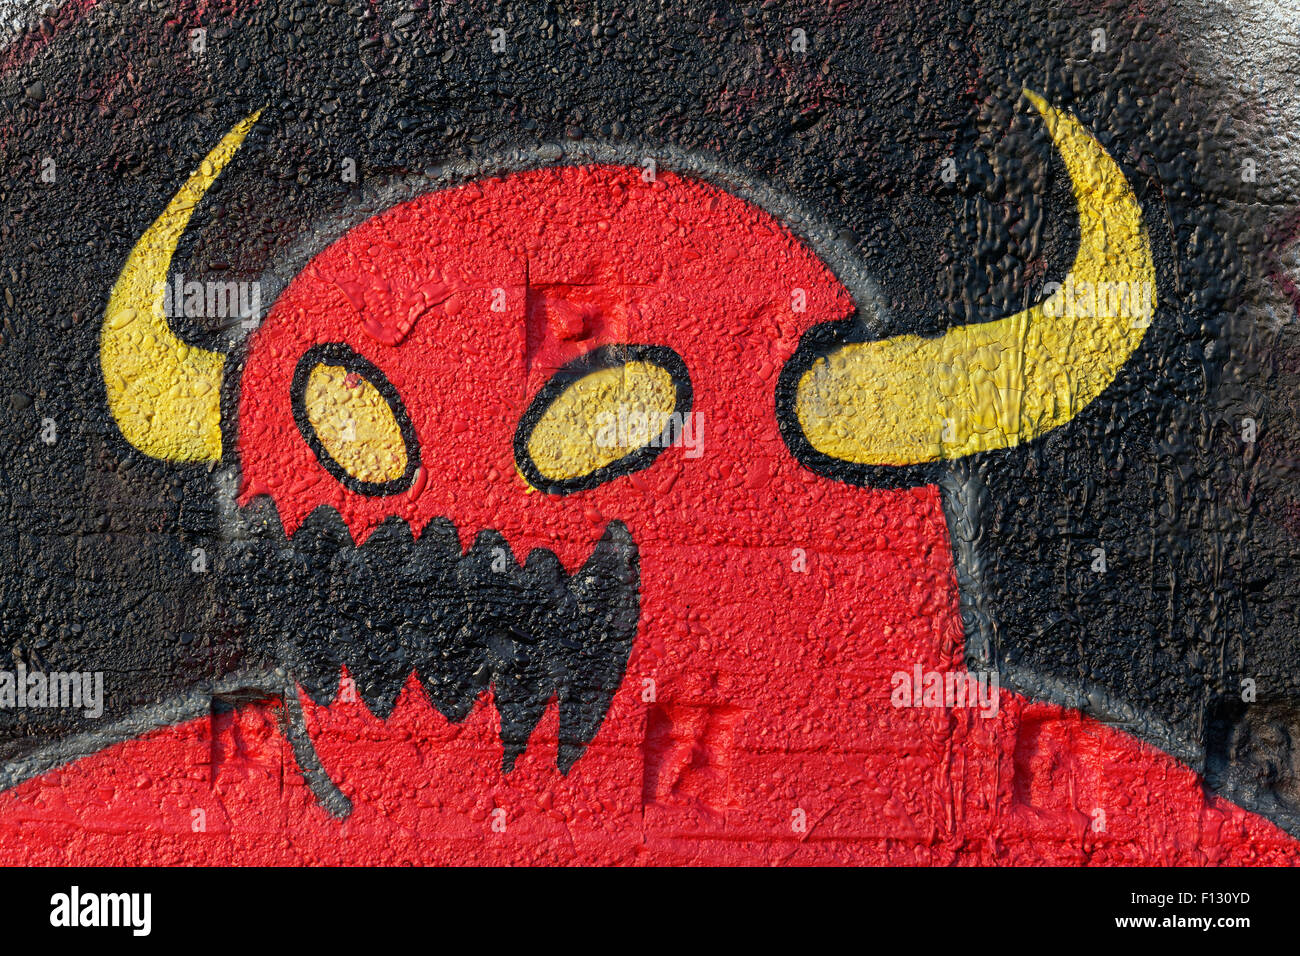 Monstre rouge avec cornes jaune, fantasy figure, graffiti, street art, Duisbourg, Rhénanie du Nord-Westphalie, Allemagne Banque D'Images